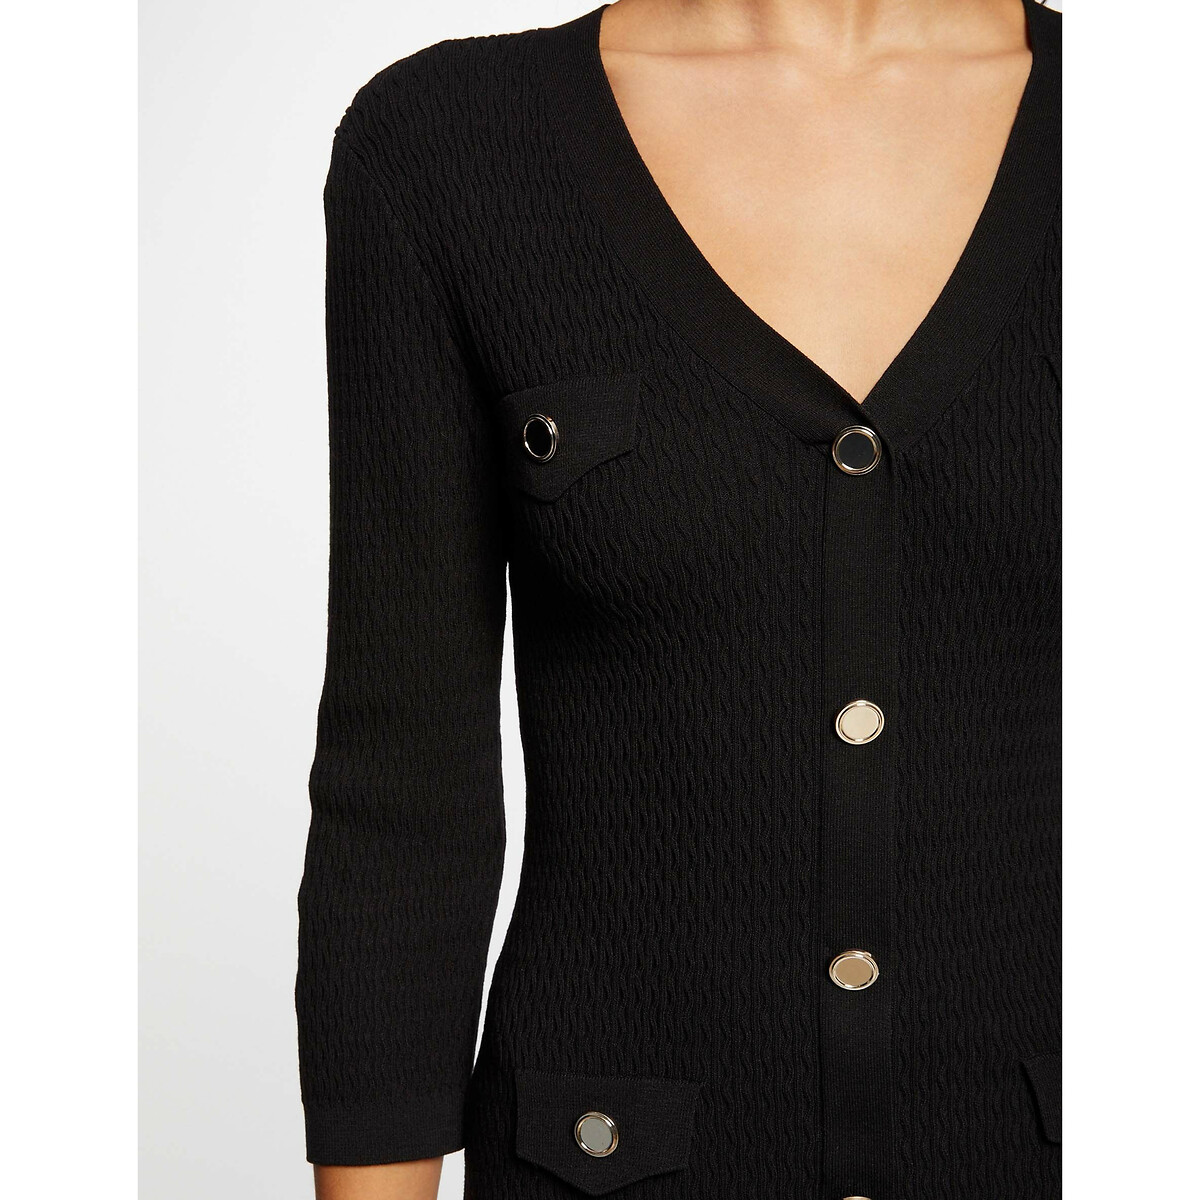 Платье-пуловер приталенное с рукавами 34 на пуговицах  L черный LaRedoute, размер L - фото 2